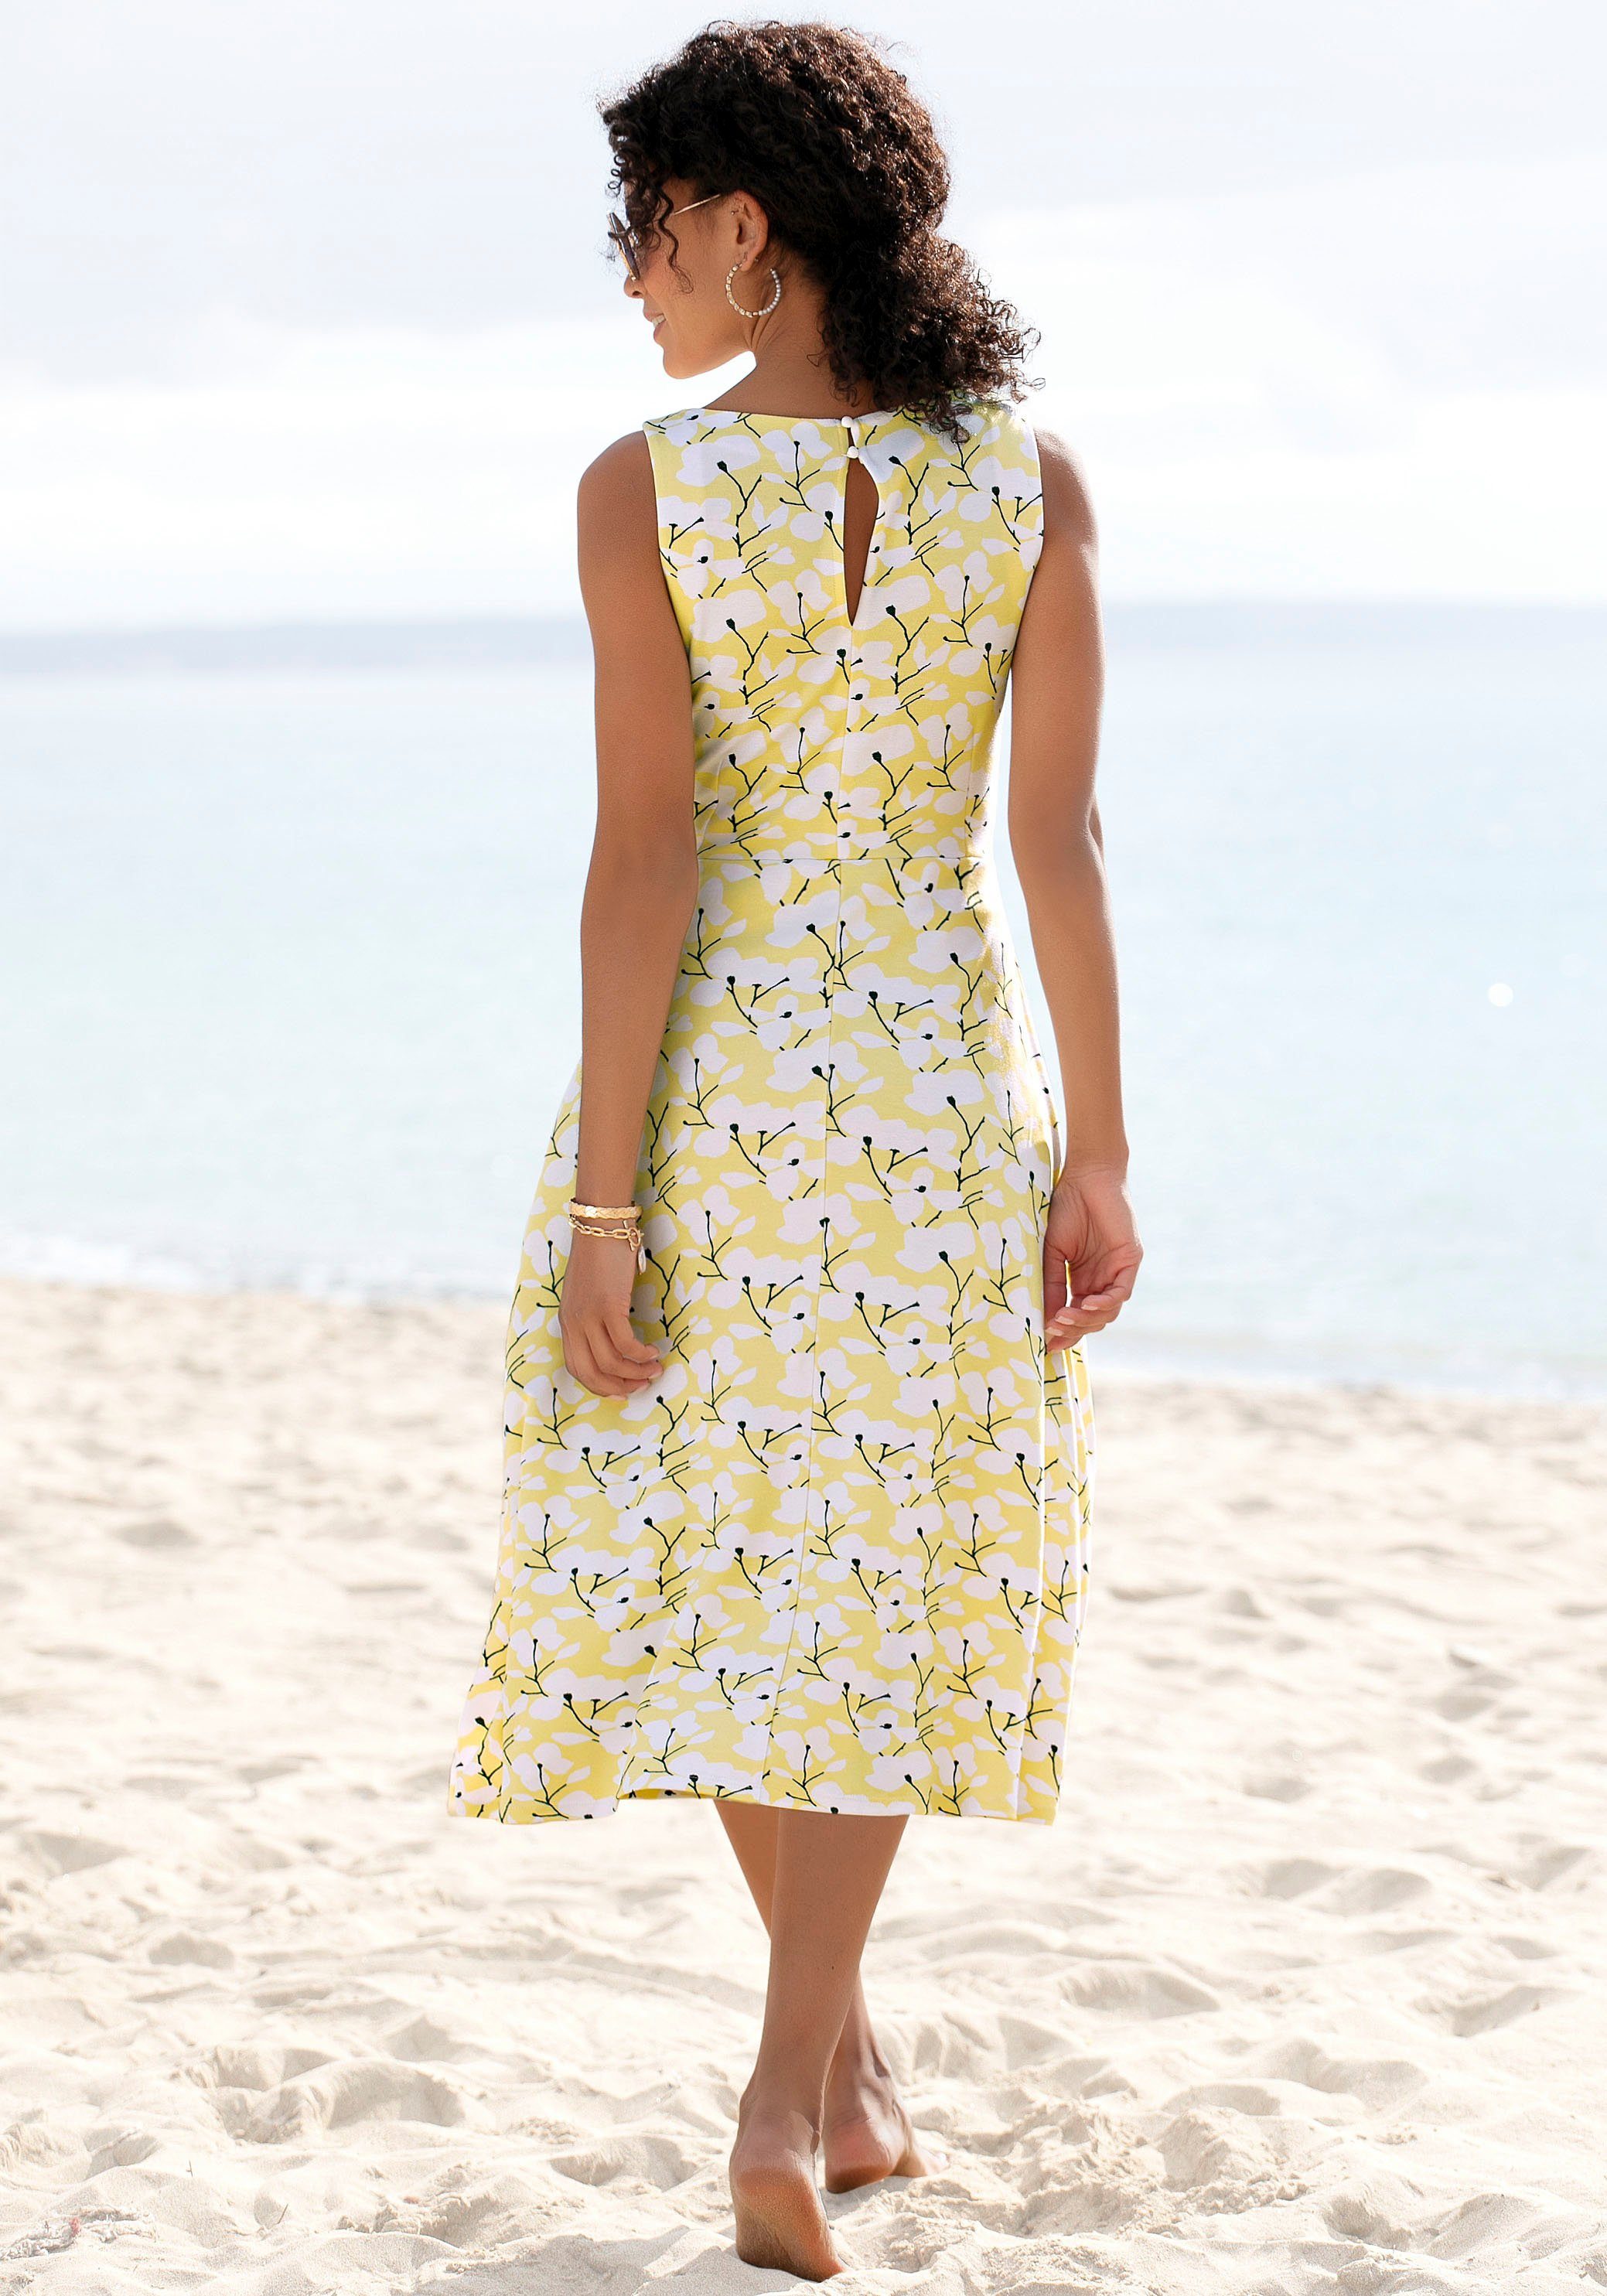 Strandbekleidung Strandmode, mit gelb-creme-bedruckt Sommerkleid Beachtime Blumendruck,